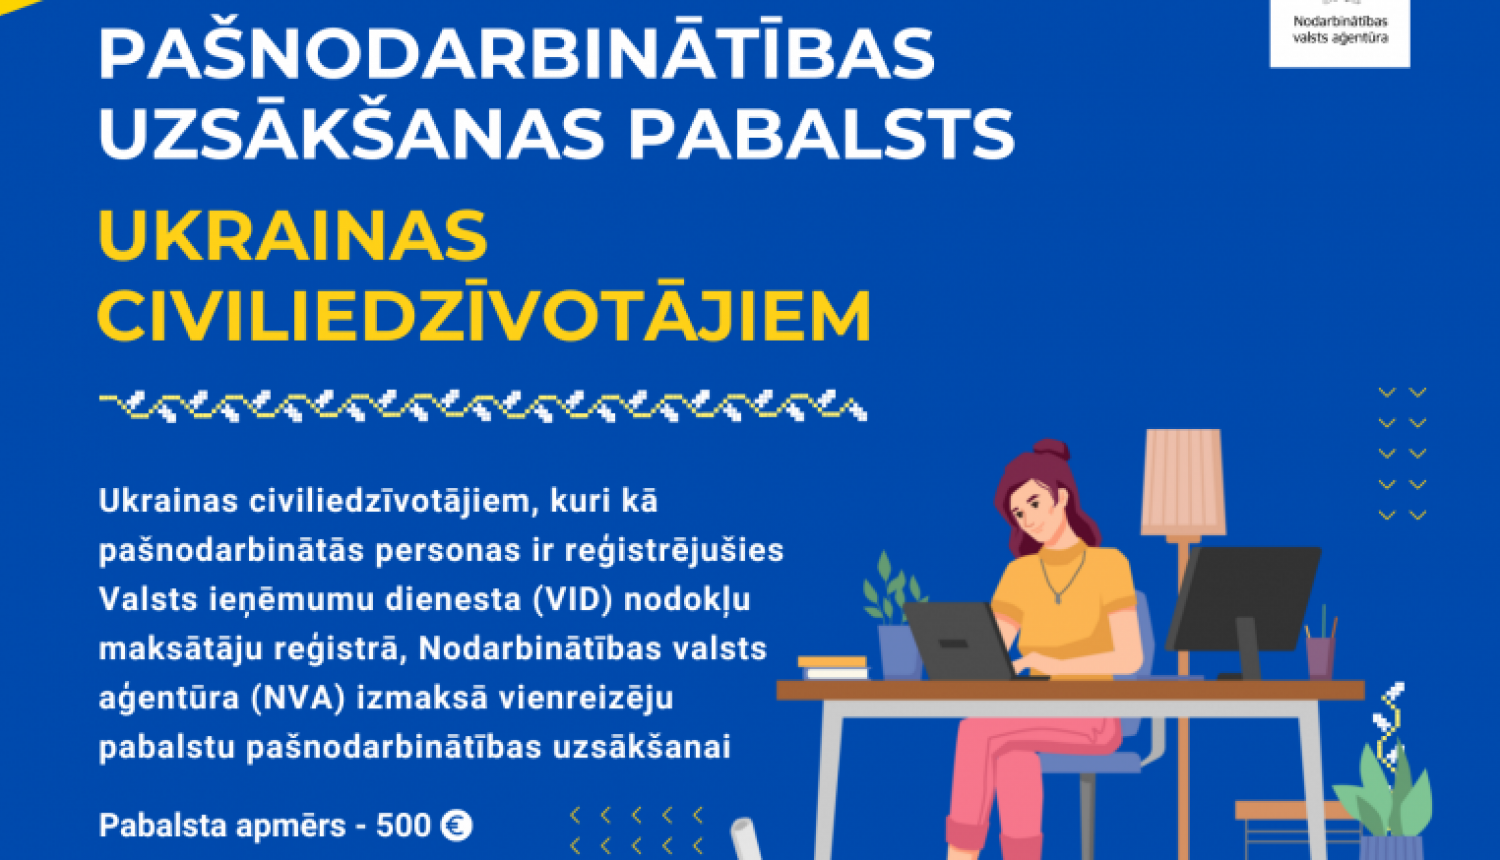 Pašnodarbinātie Ukrainas civiliedzīvotāji  var saņemt NVA pašnodarbinātības uzsākšanas pabalstu